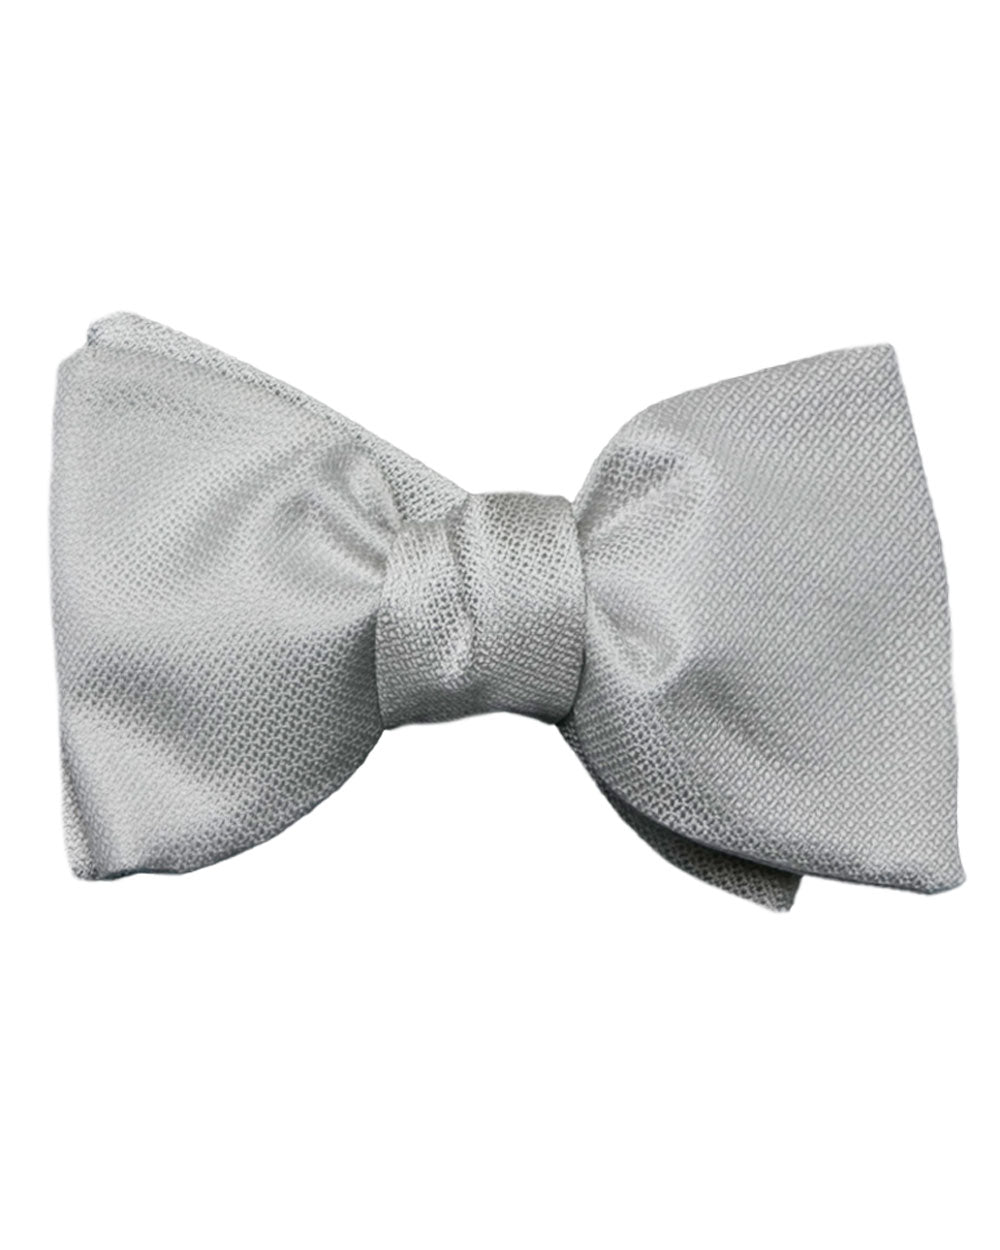 Silver Self-Tie Bow Tie